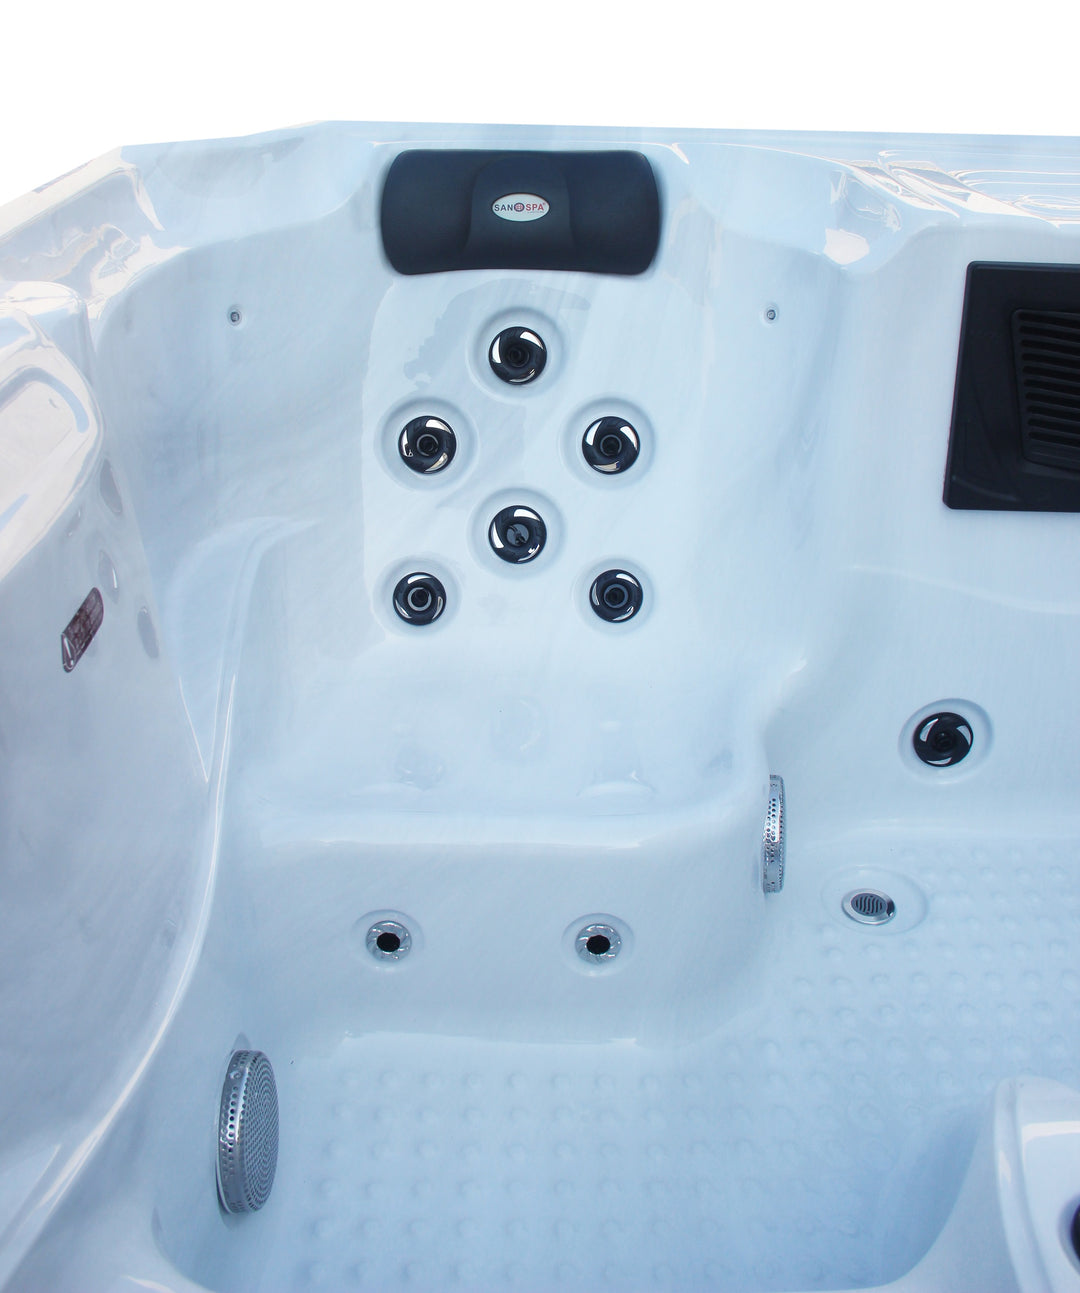 Outdoorwhirlpool OASIS Weiß inkl. Abdeckung und Stiege 208x175x90 cm